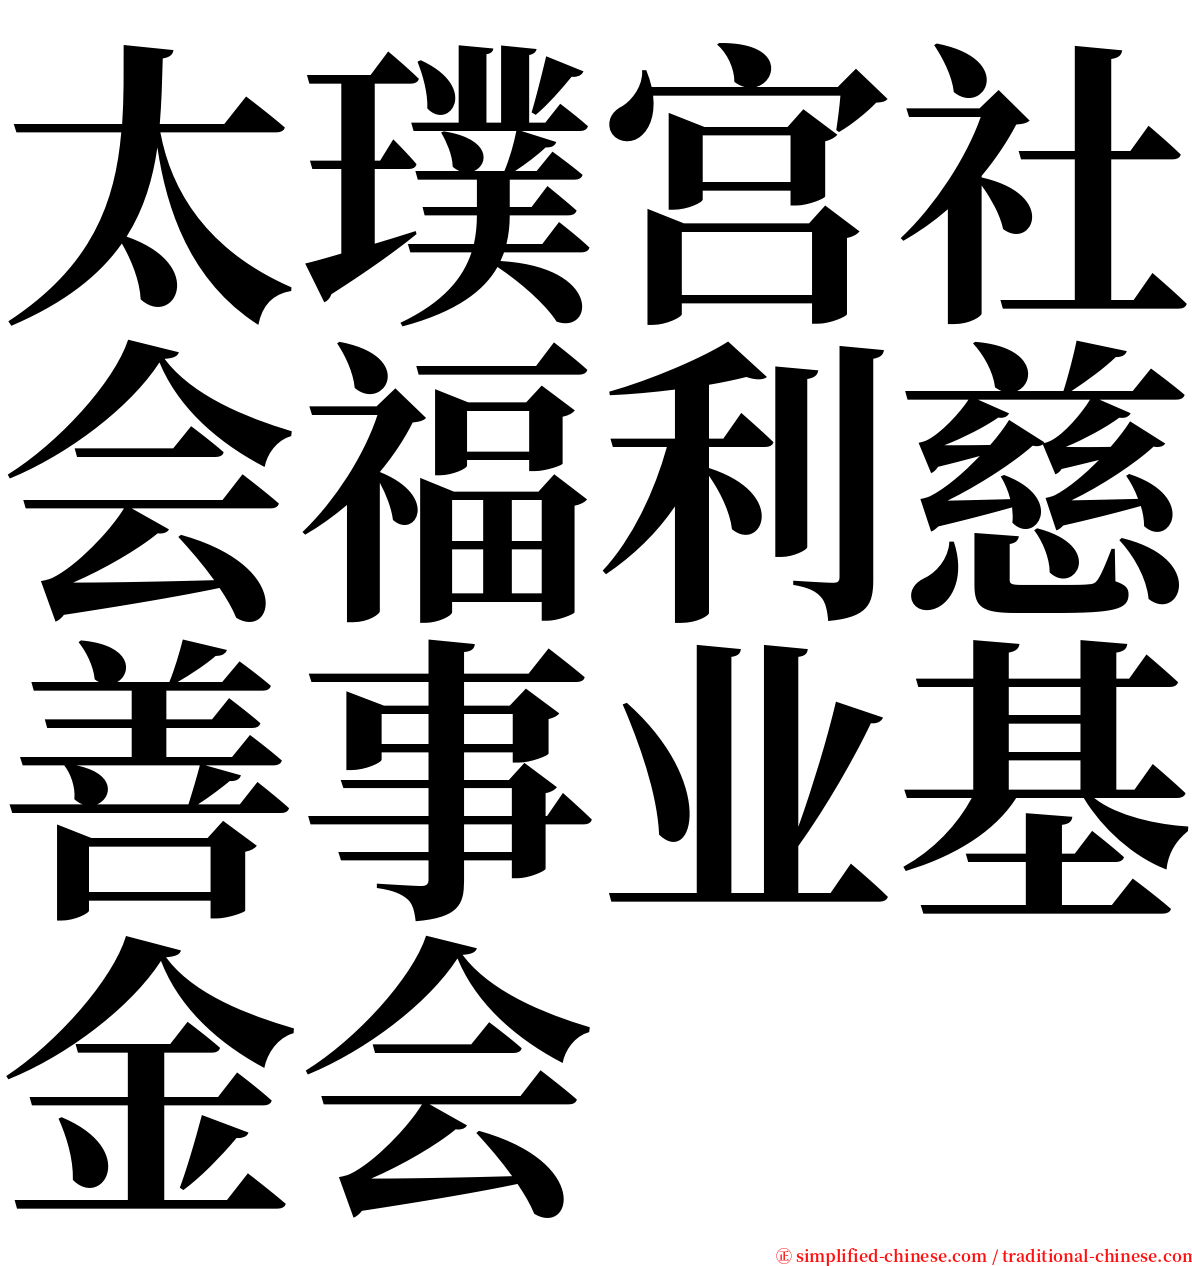 太璞宫社会福利慈善事业基金会 serif font